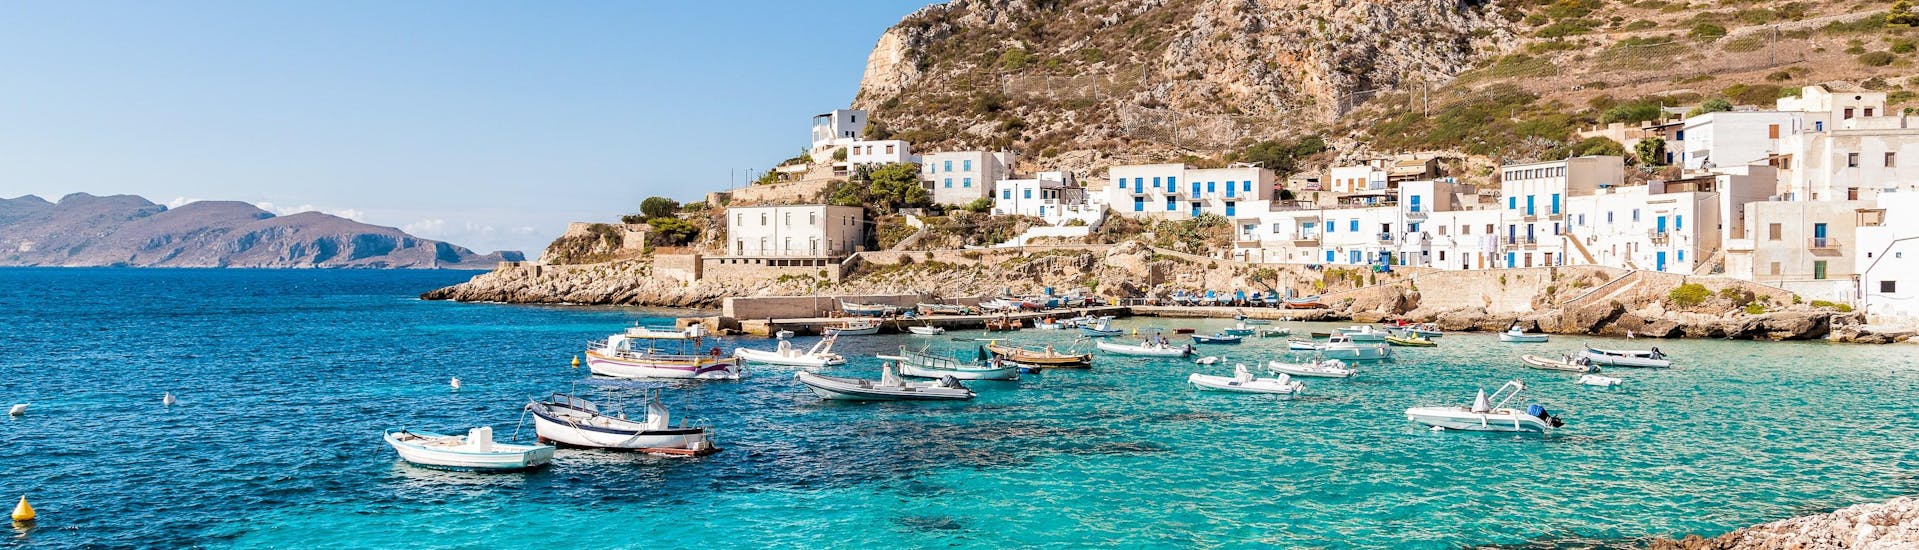 La vista della bellissima costa che i visitatori possono ammirare durante un giro in barca all’isola di Marettimo in Sicilia.